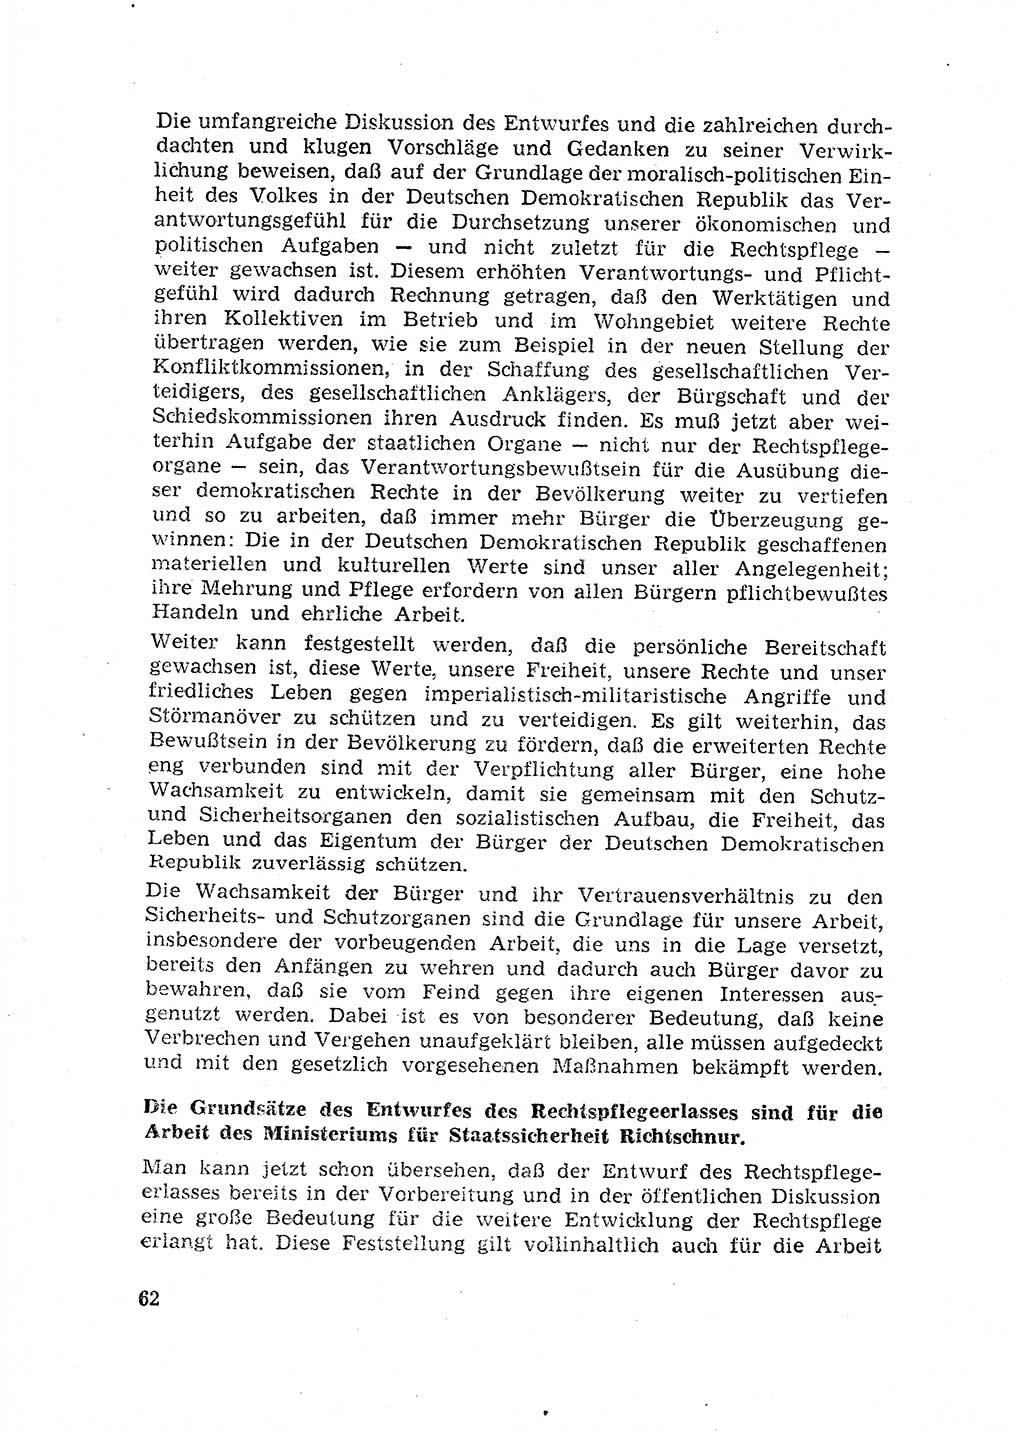 Rechtspflegeerlaß [Deutsche Demokratische Republik (DDR)] 1963, Seite 62 (R.-Pfl.-Erl. DDR 1963, S. 62)